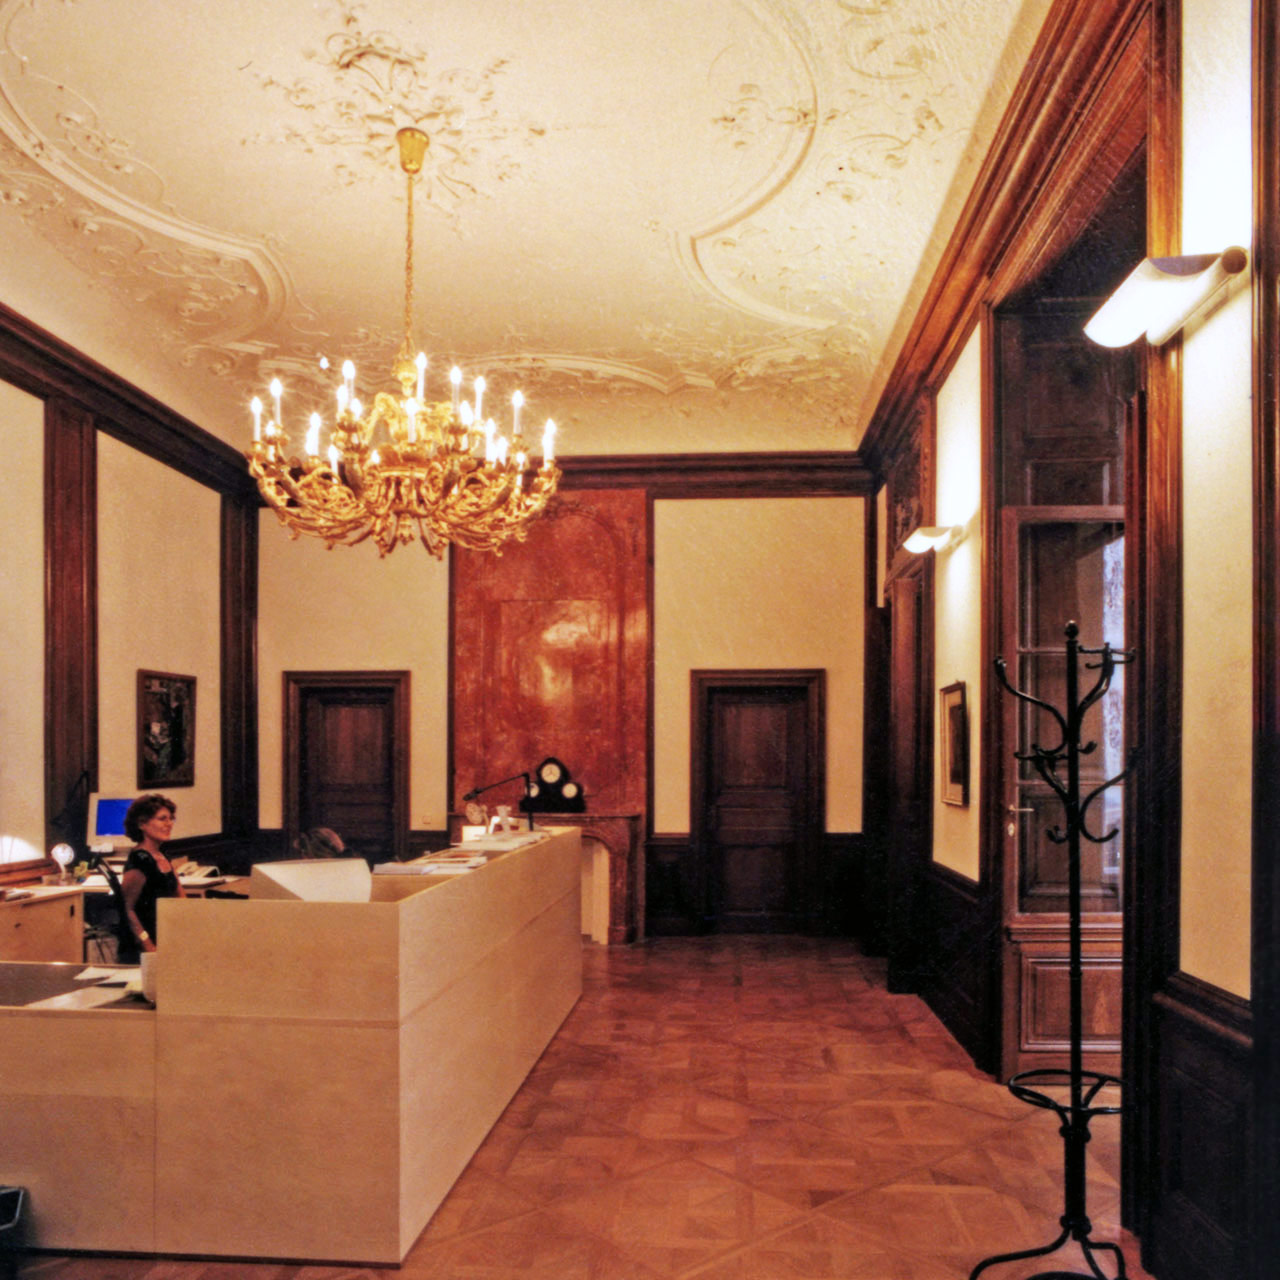 1999 - Wiener KUNSTAUKTIONEN, A-1010 Wien